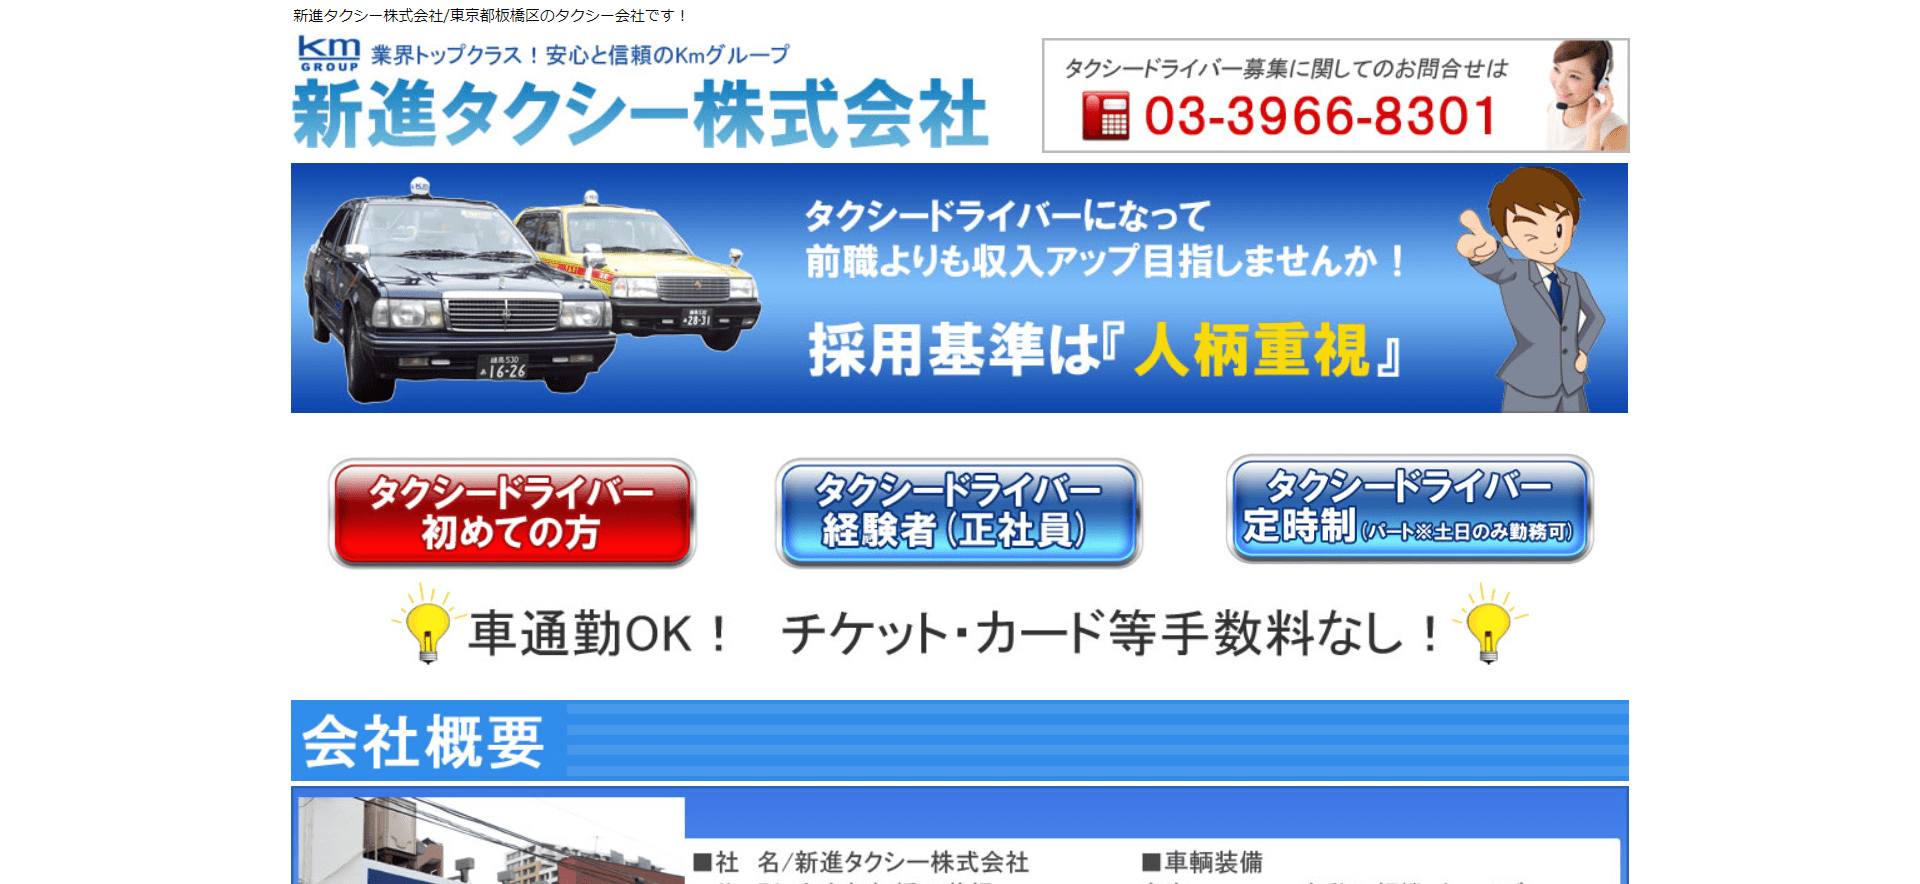 新進タクシー株式会社の画像